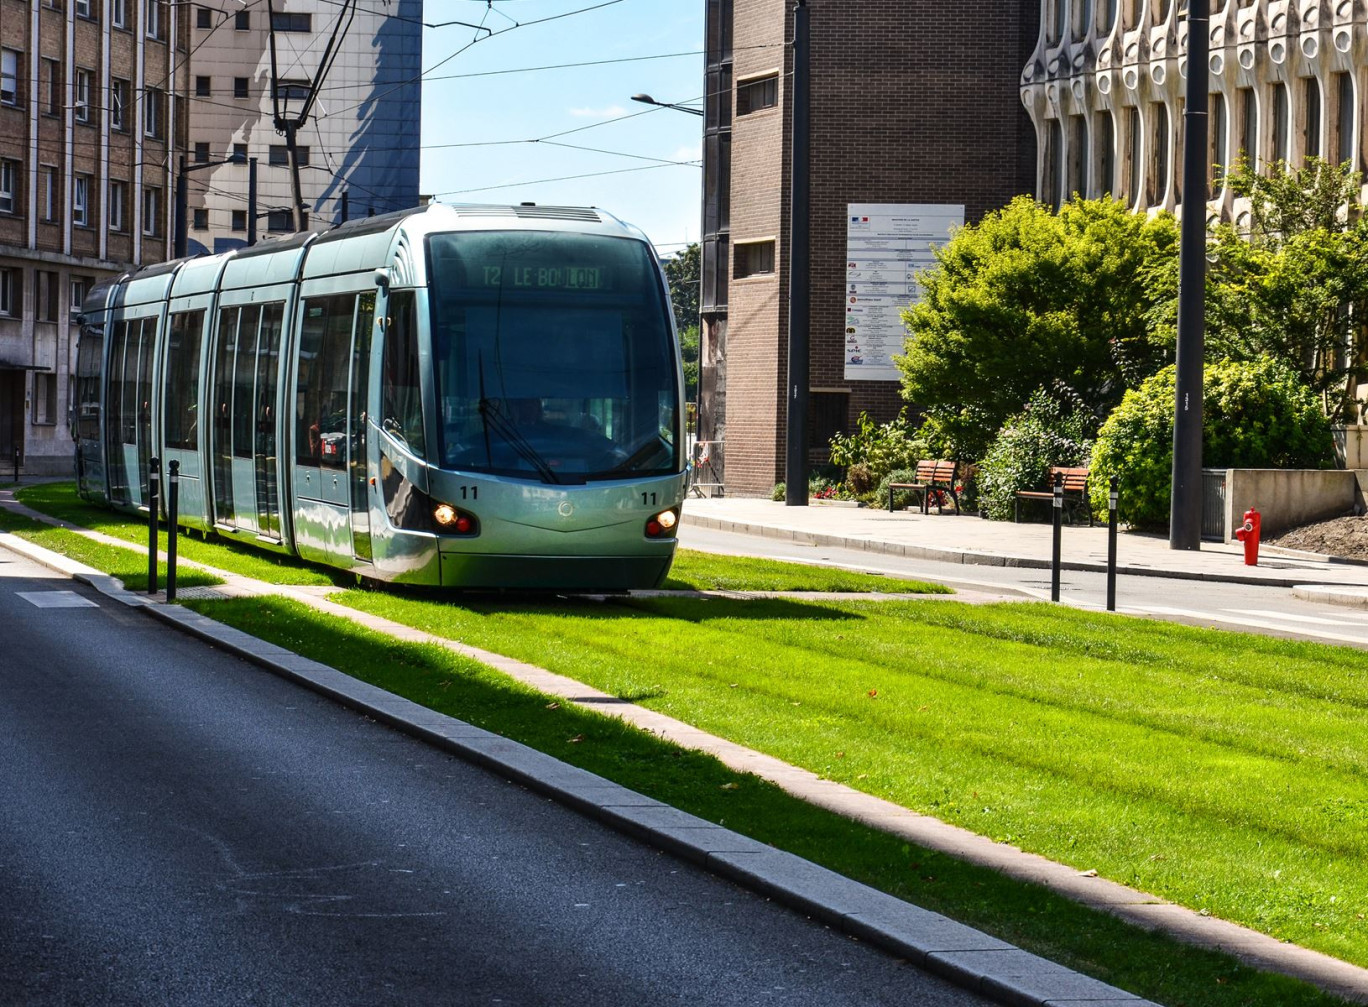 « La moitié des urbains ont accès à un transport public à moins de 10 minutes de chez eux », souligne l’Union des transports publics. Tramway à Valenciennes (59) © Catalin